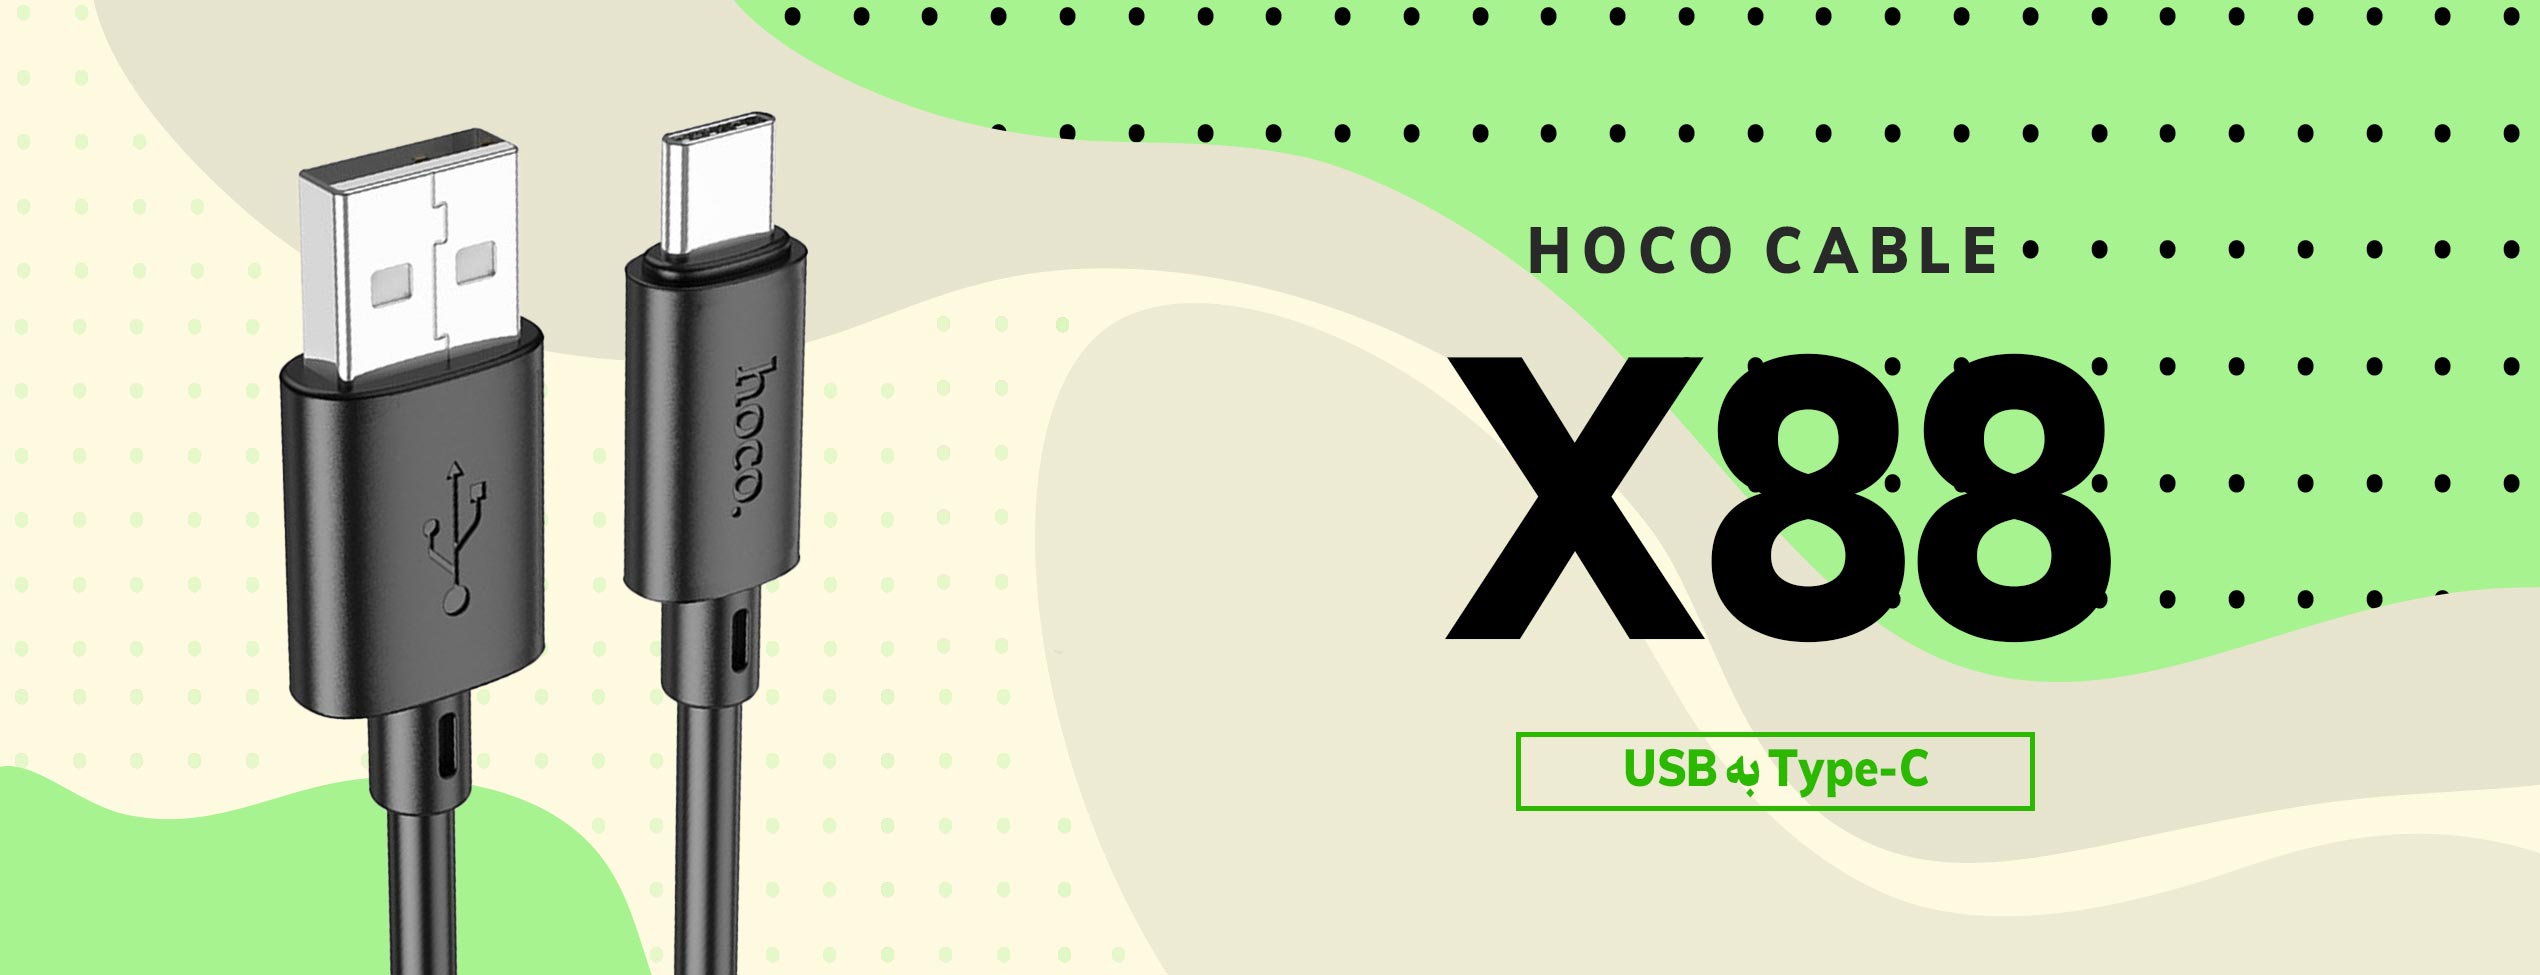 کابل تبدیل USB به Type-C هوکو مدل X88